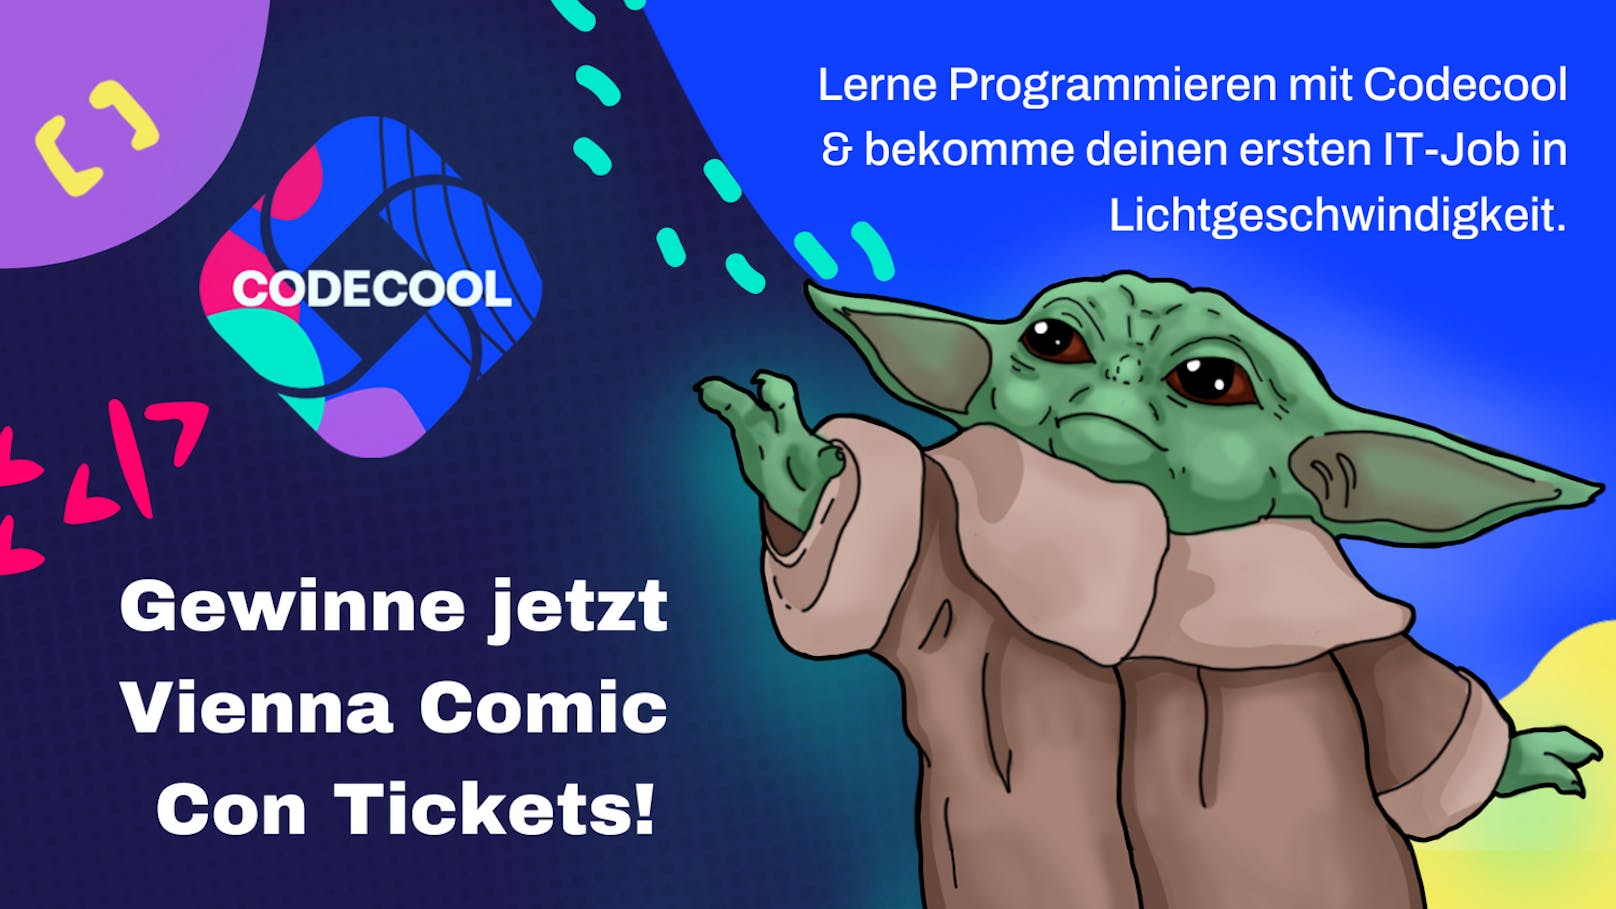 Jetzt teilnehmen und zwei Tageskarten für die Vienna Comic Con 2022 gewinnen!